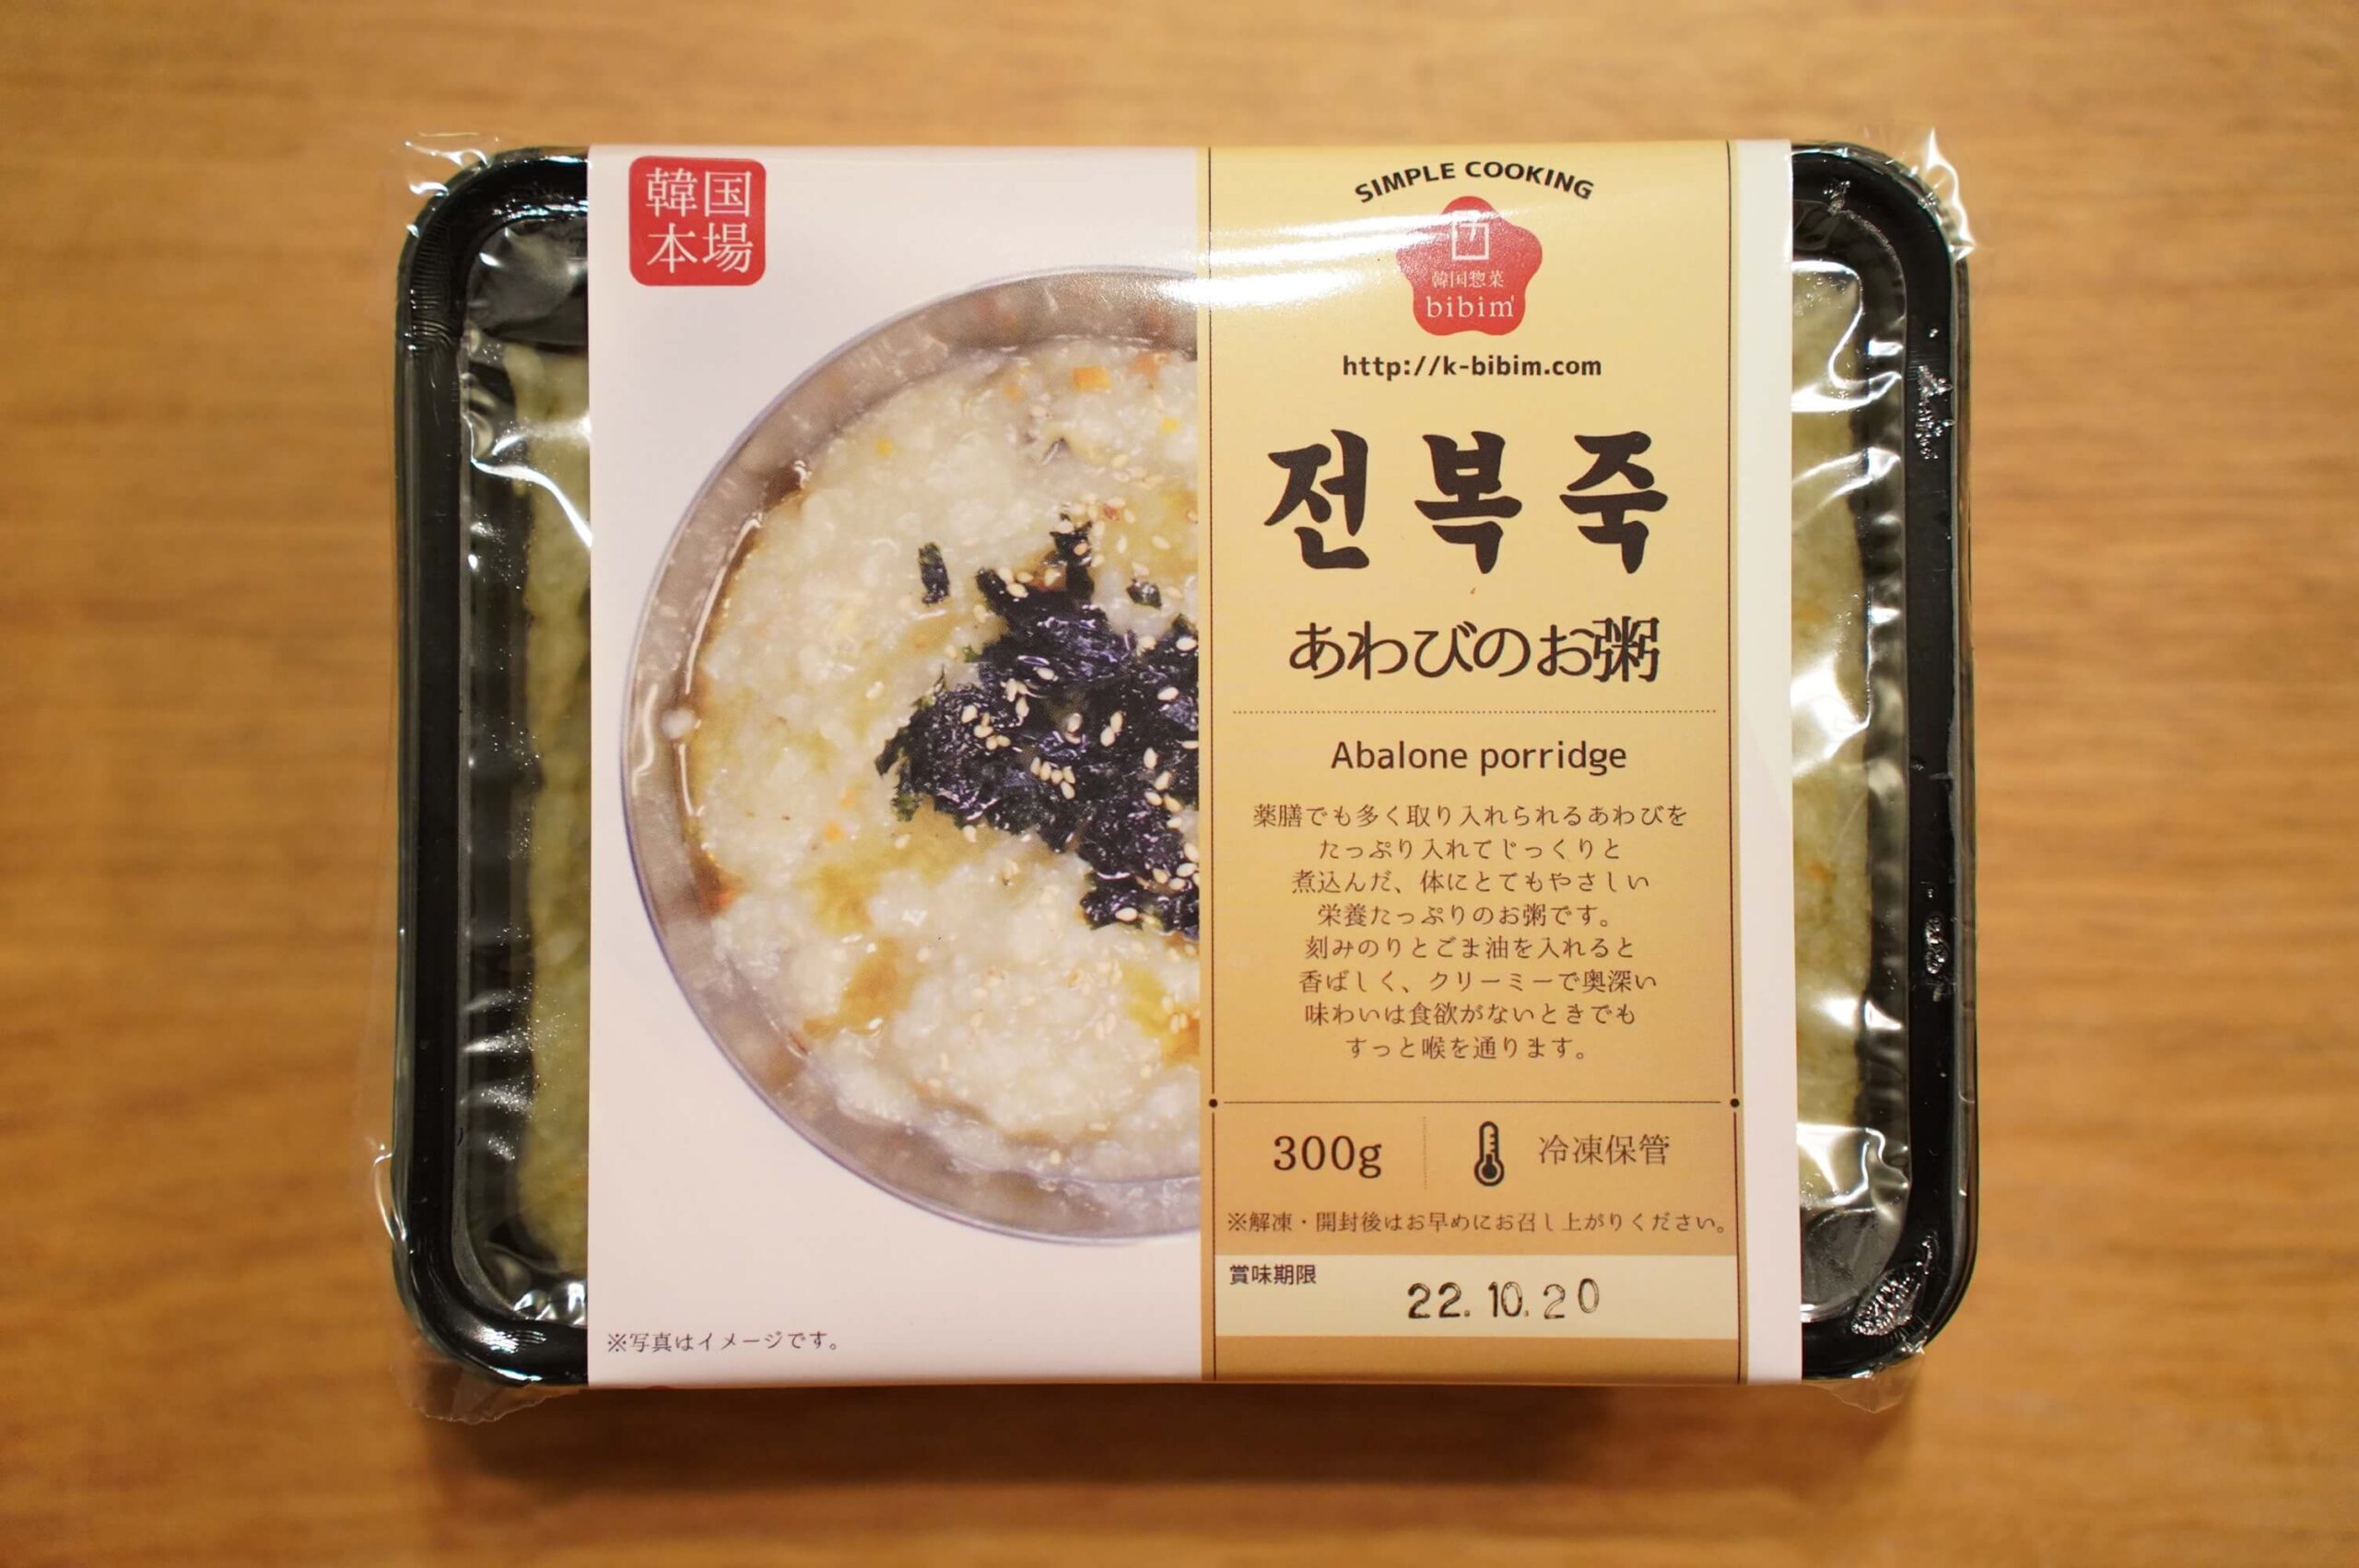 おすすめの美味しい韓国料理の冷凍食品「あわびのお粥」のパッケージ写真